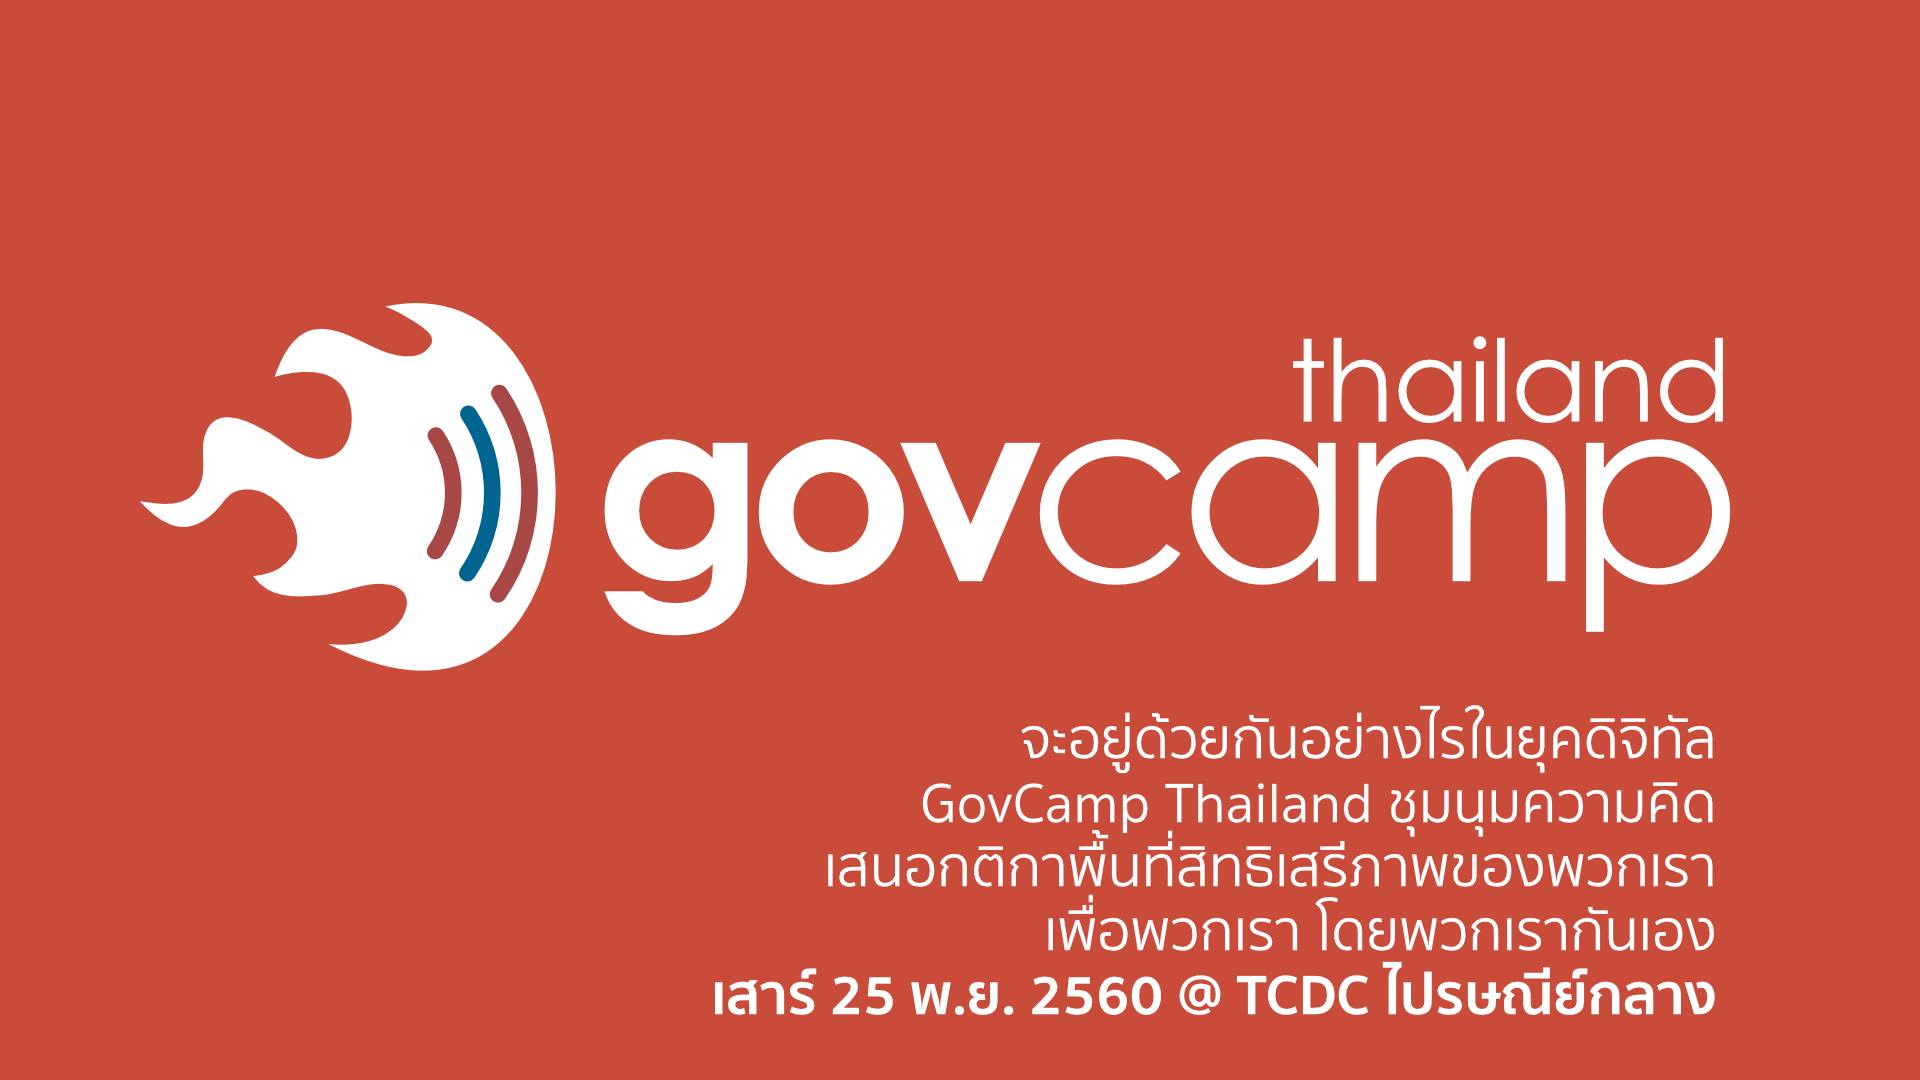 ขอเชิญเข้าร่วมงาน “GovCamp Thailand” พูดคุยในประเด็น “สิทธิเสรีภาพออนไลน์”